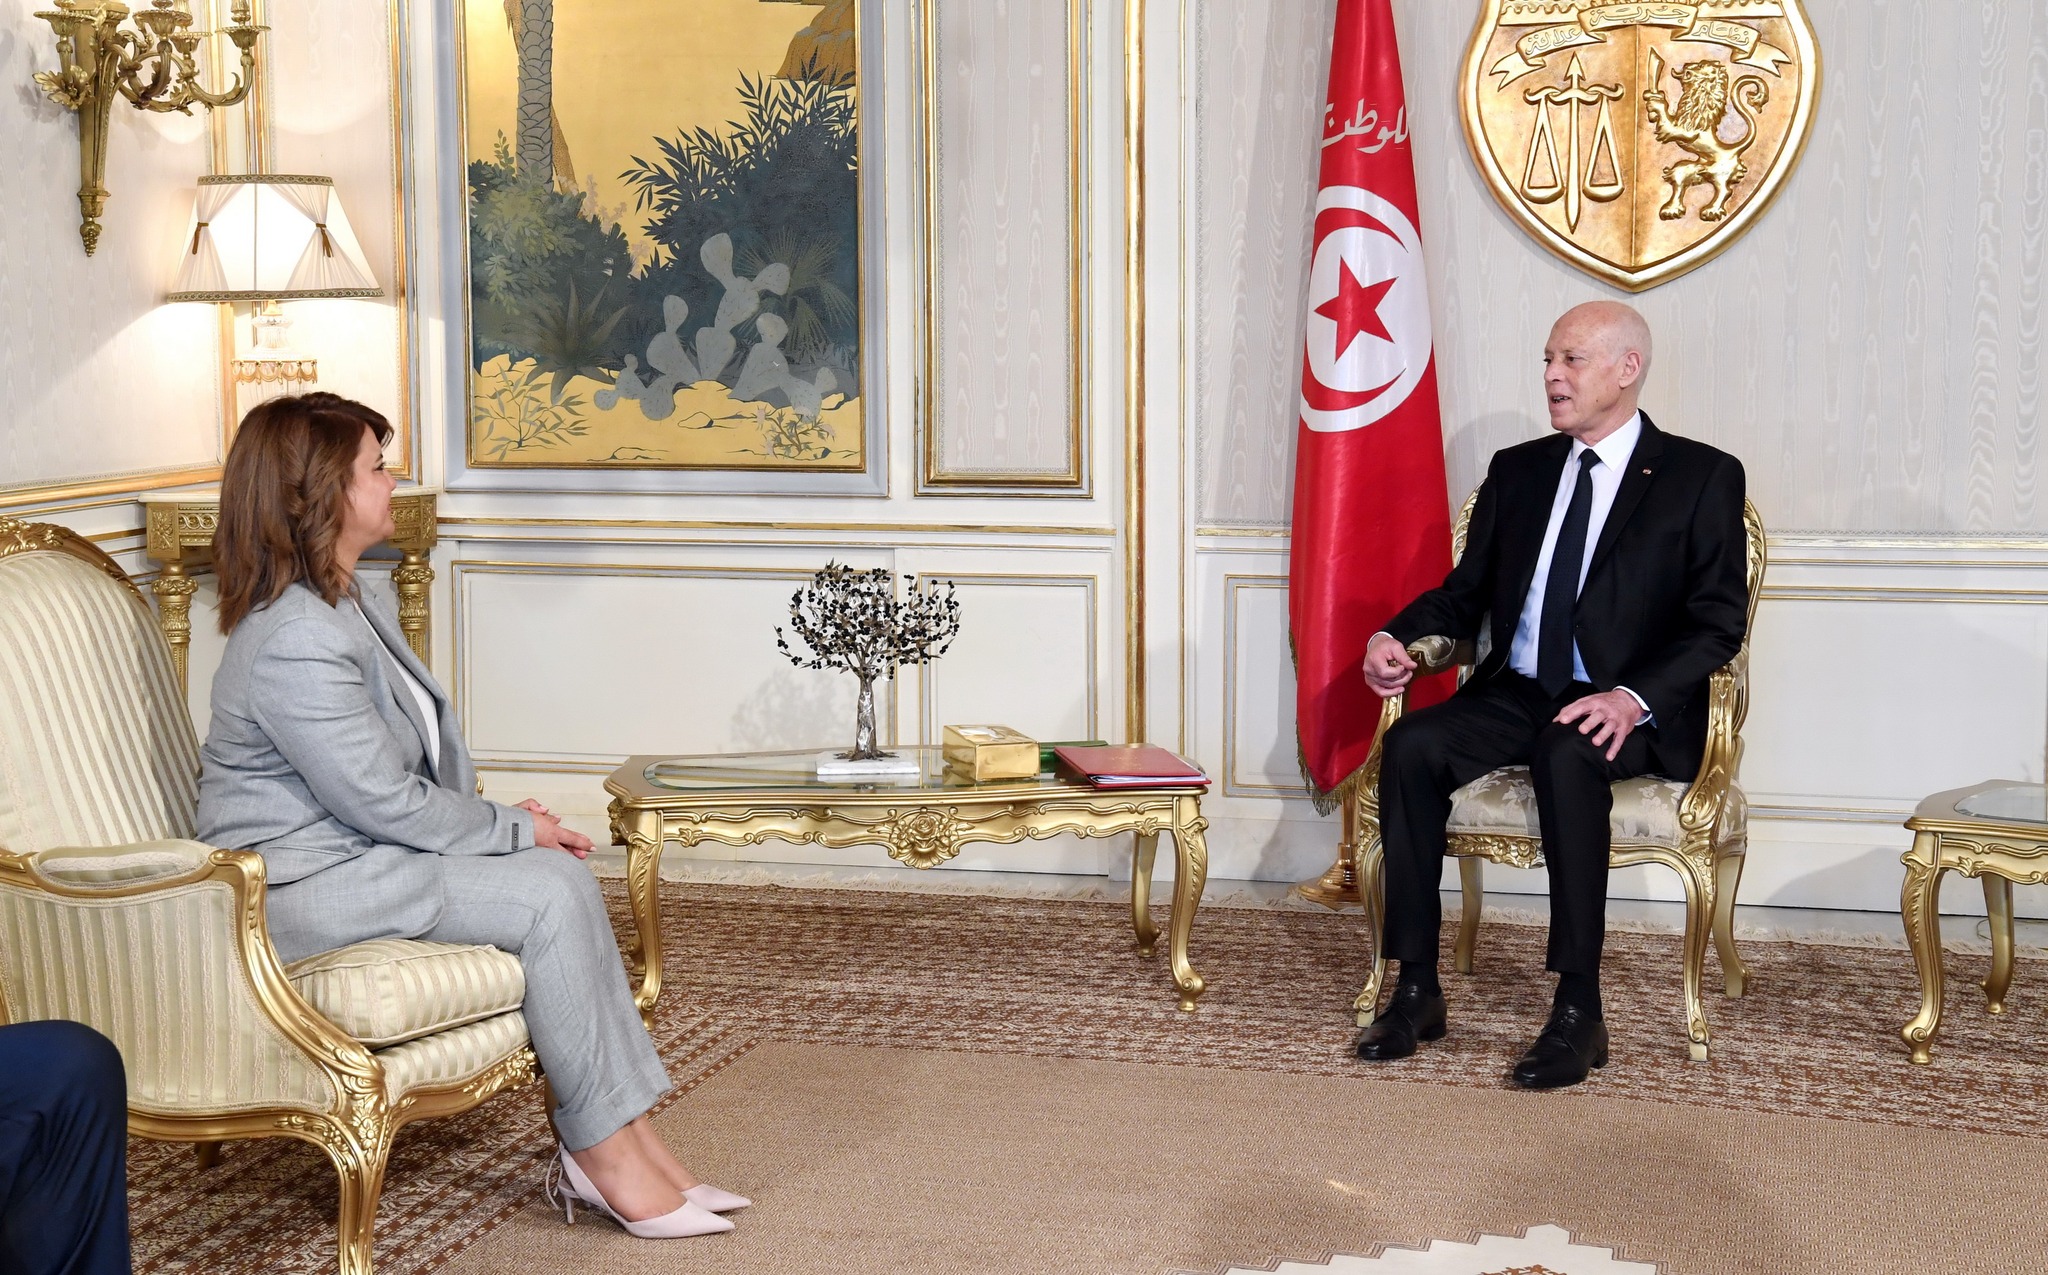 Le président tunisien réaffirme la position ferme de son pays concernant la résolution de la crise en Libye sans ingérence extérieure.